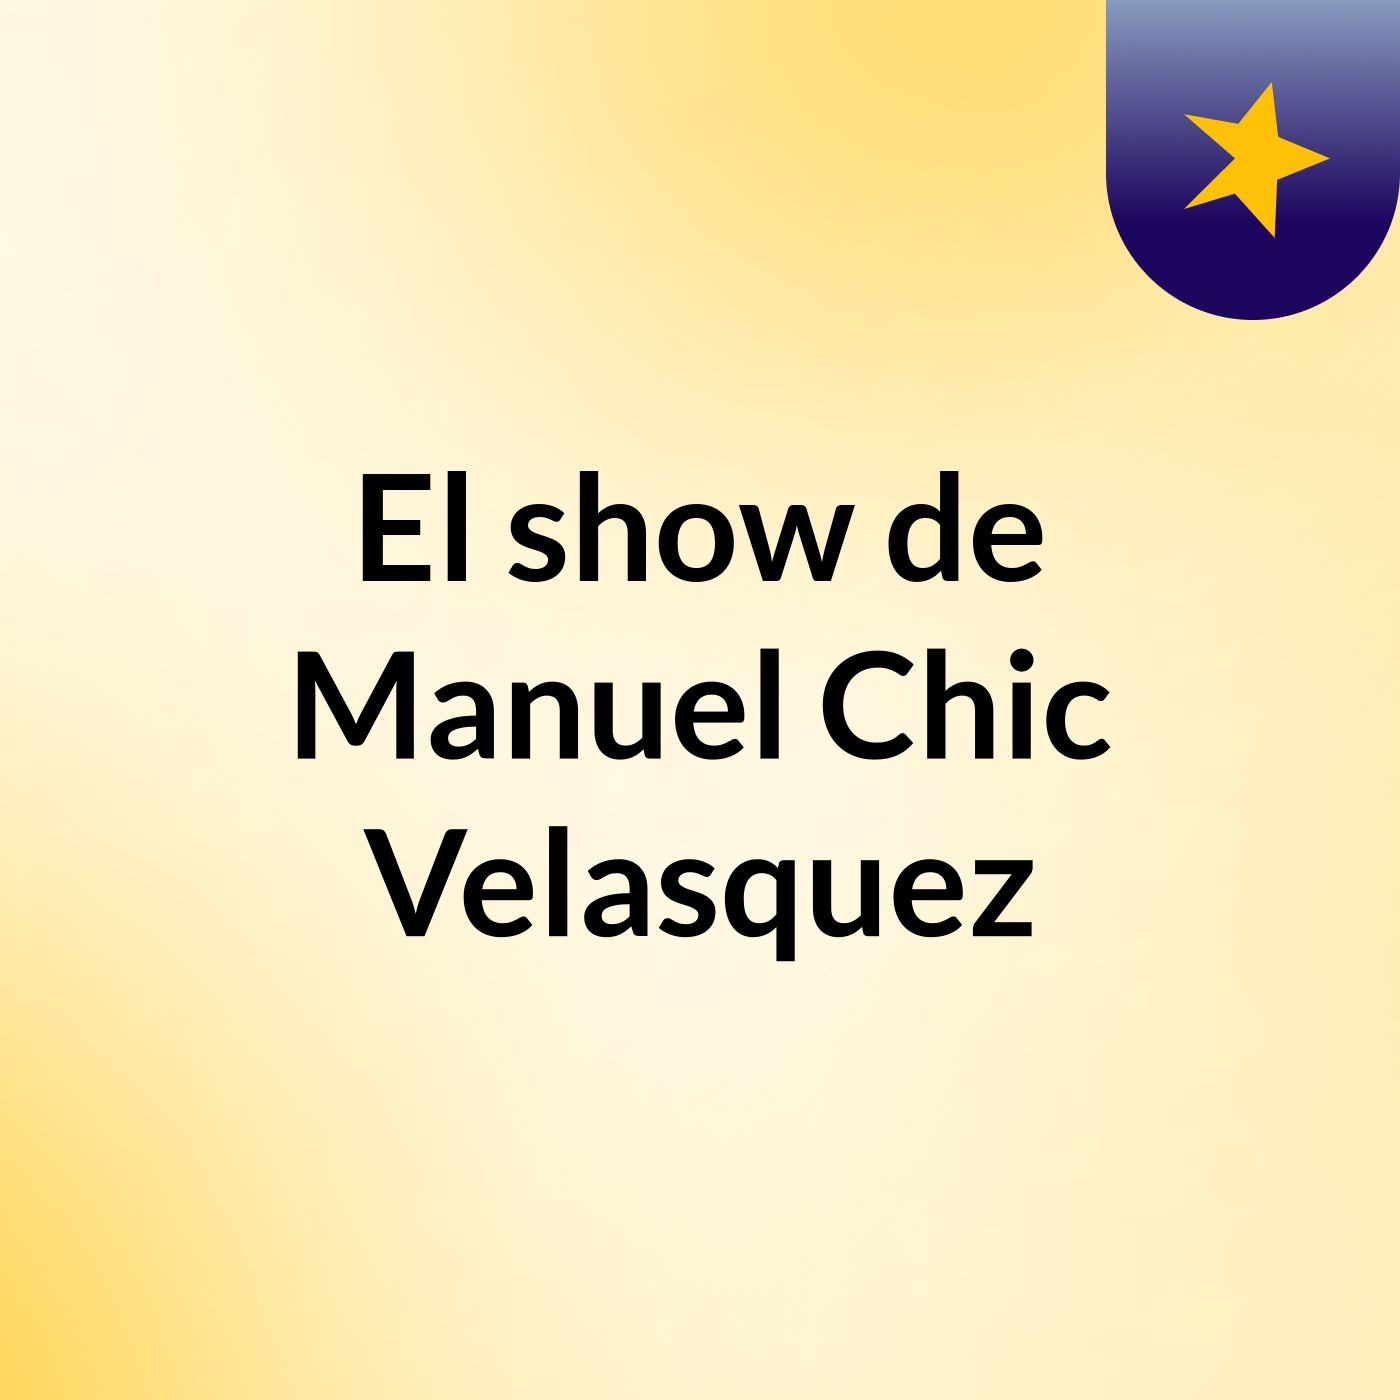 Episodio 4 - El show de Manuel Chic Velasquez